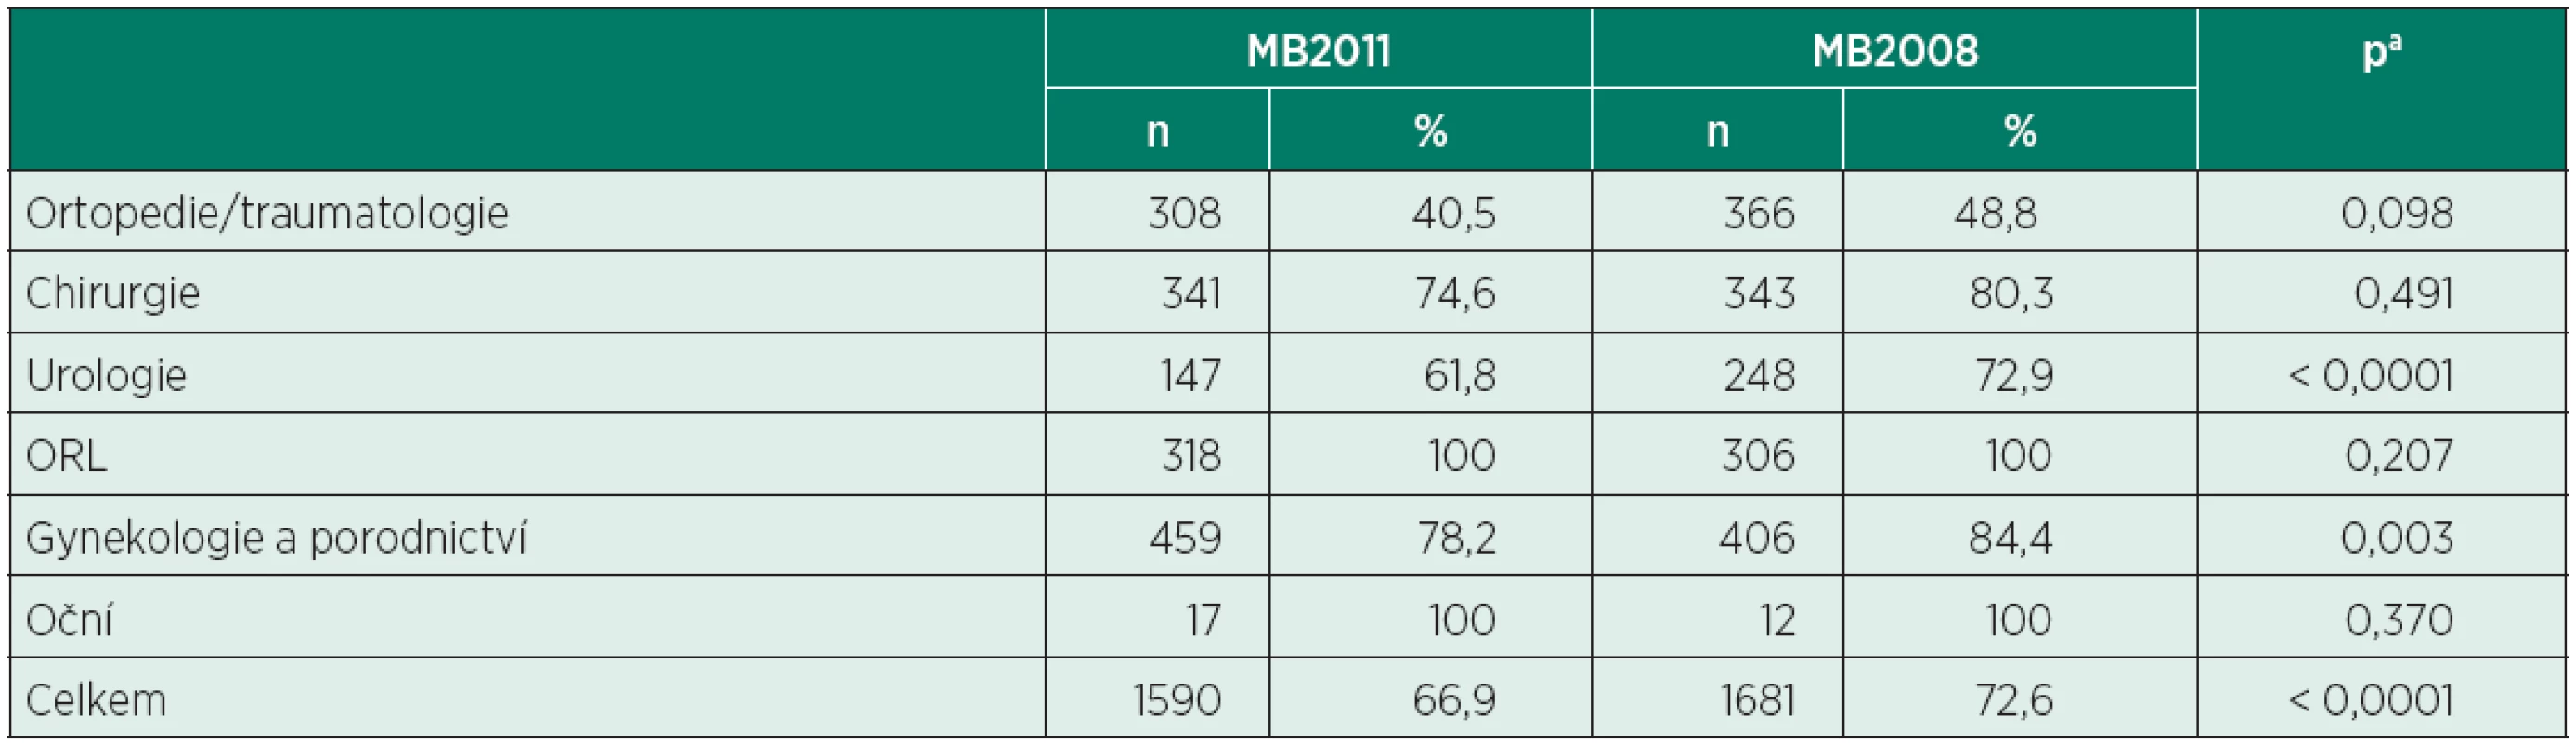 Počty celkových anestezií ve vybraných oborech (MB2011 vs. MB2008)